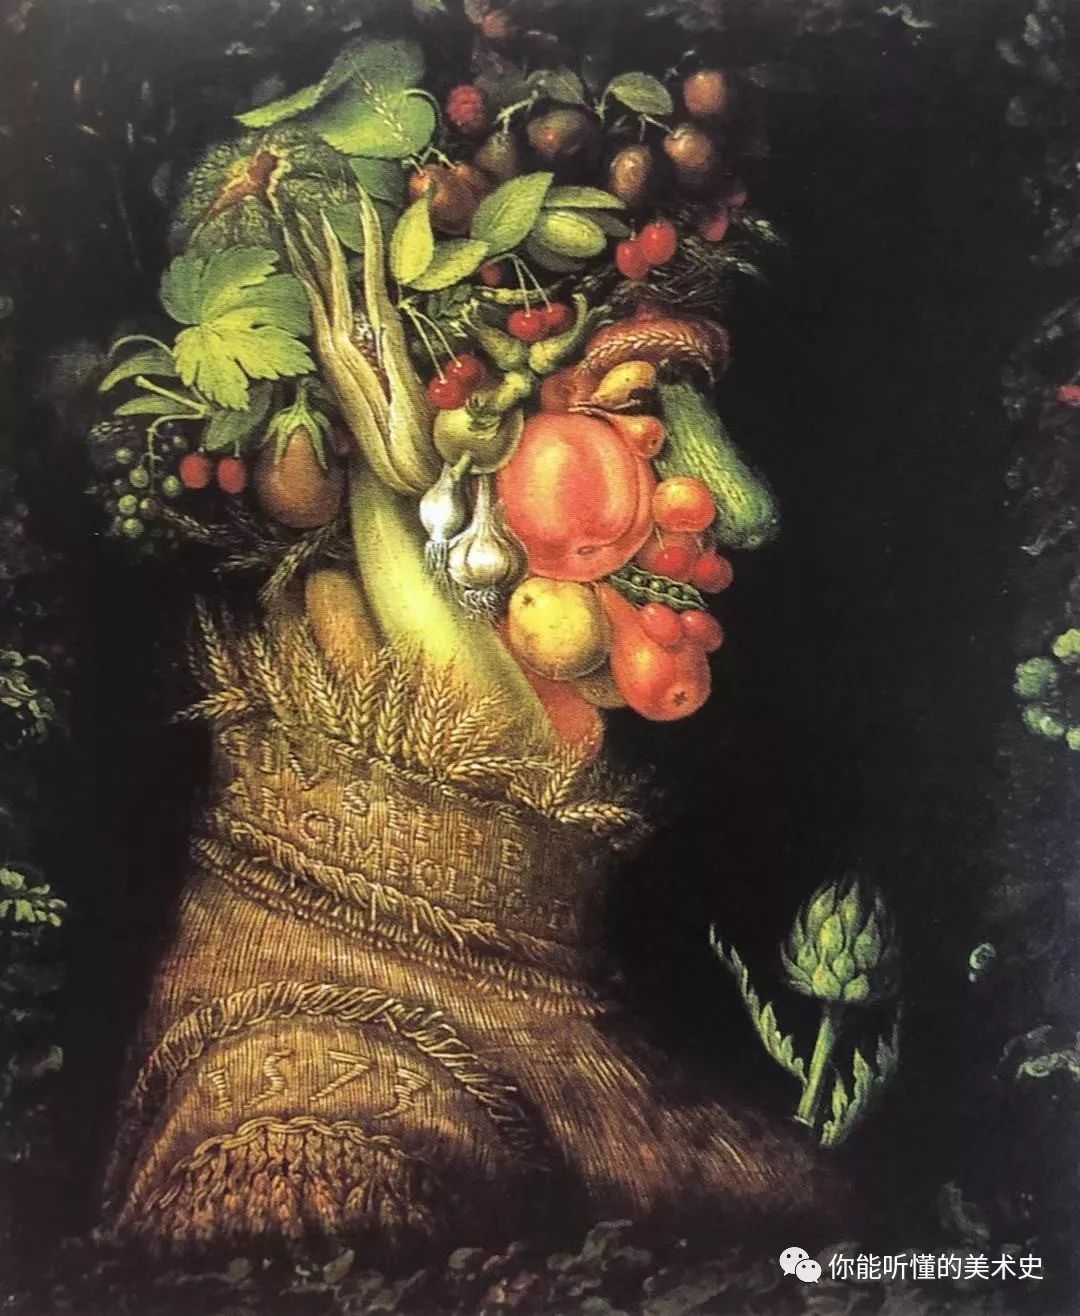 睇美术史用蔬菜水果组合肖像画的大师看完食欲大增